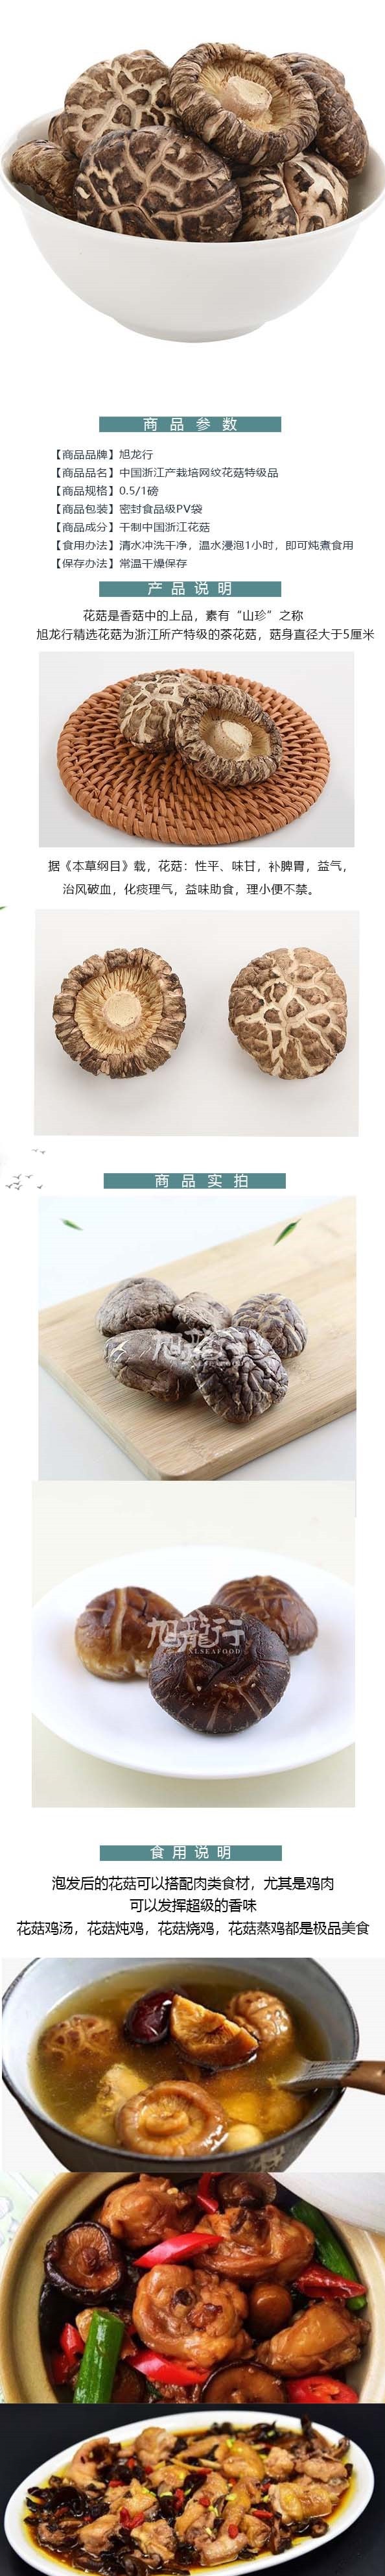 美國旭龍行特級韓式白花菇 中國產足幹網紋花菇 227公克 8oz